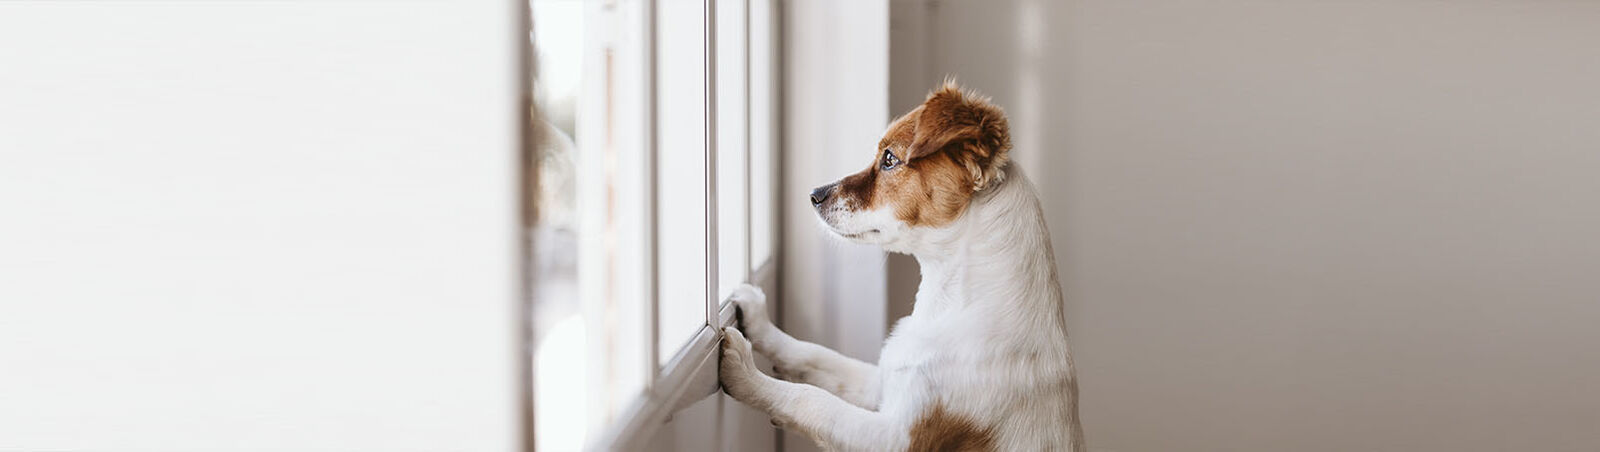 Hund stützt sich am Fensterrahmen ab und schaut raus.